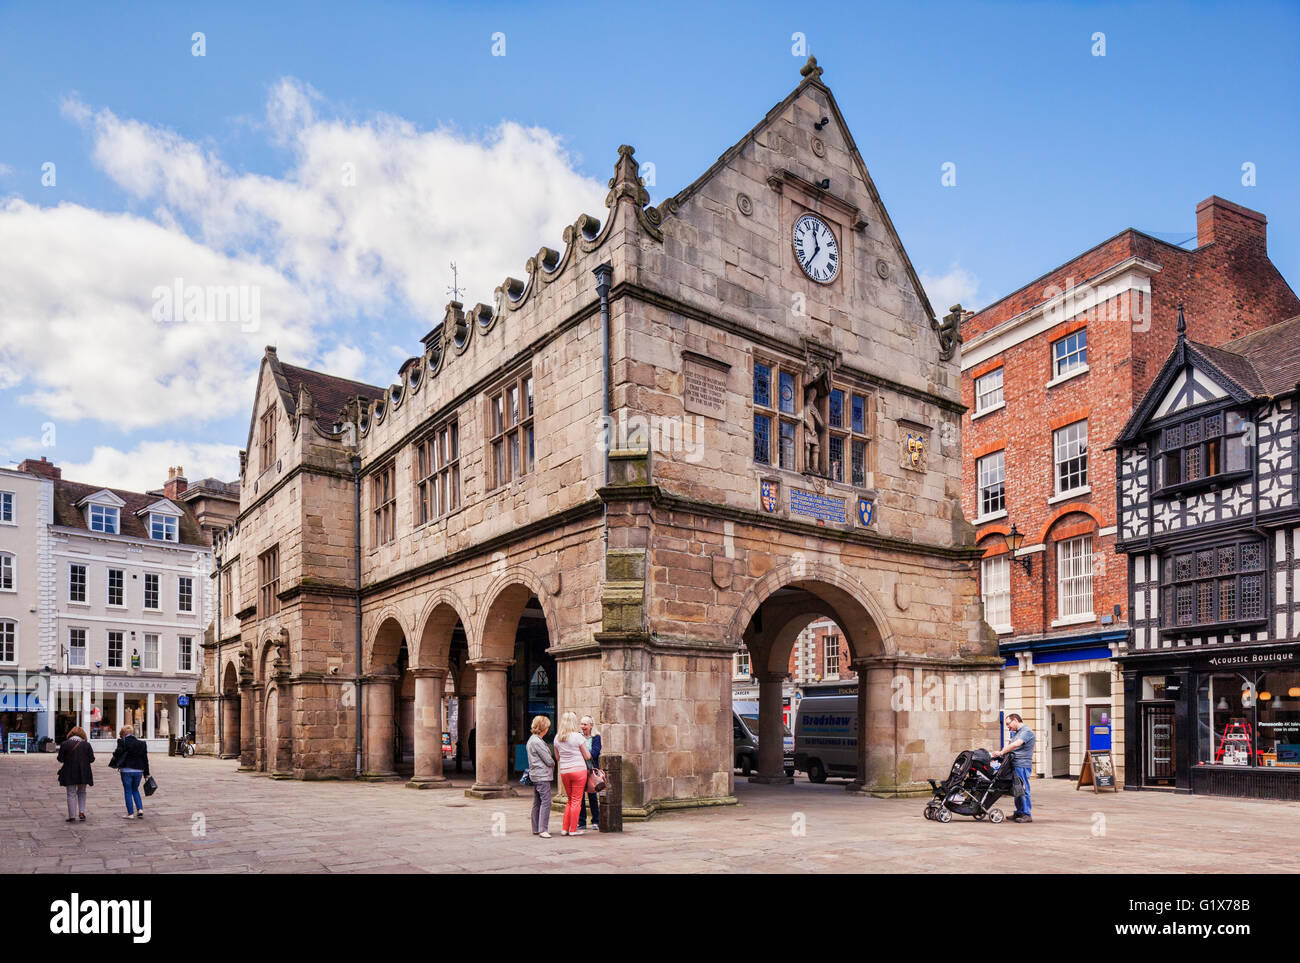 Shrewsbury, le vieux marché située sur la place du marché, Shropshire, England, UK, construit en 1596. Banque D'Images